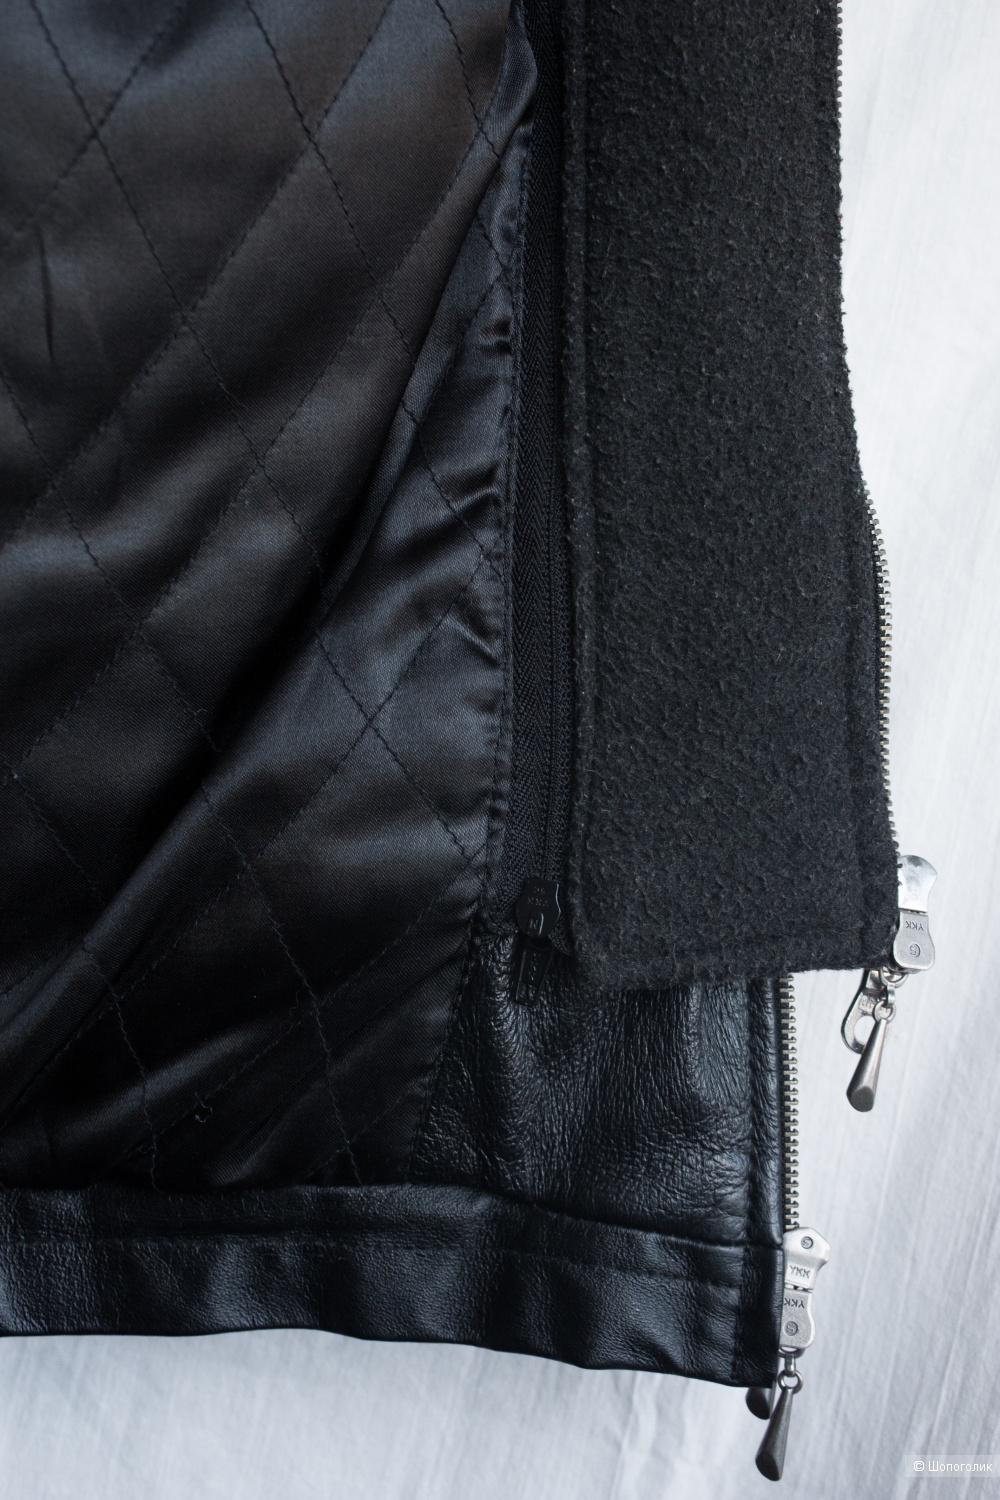 Куртка кожаная мужская трансформер TCM  Tchibo GmbH, 52 Ru